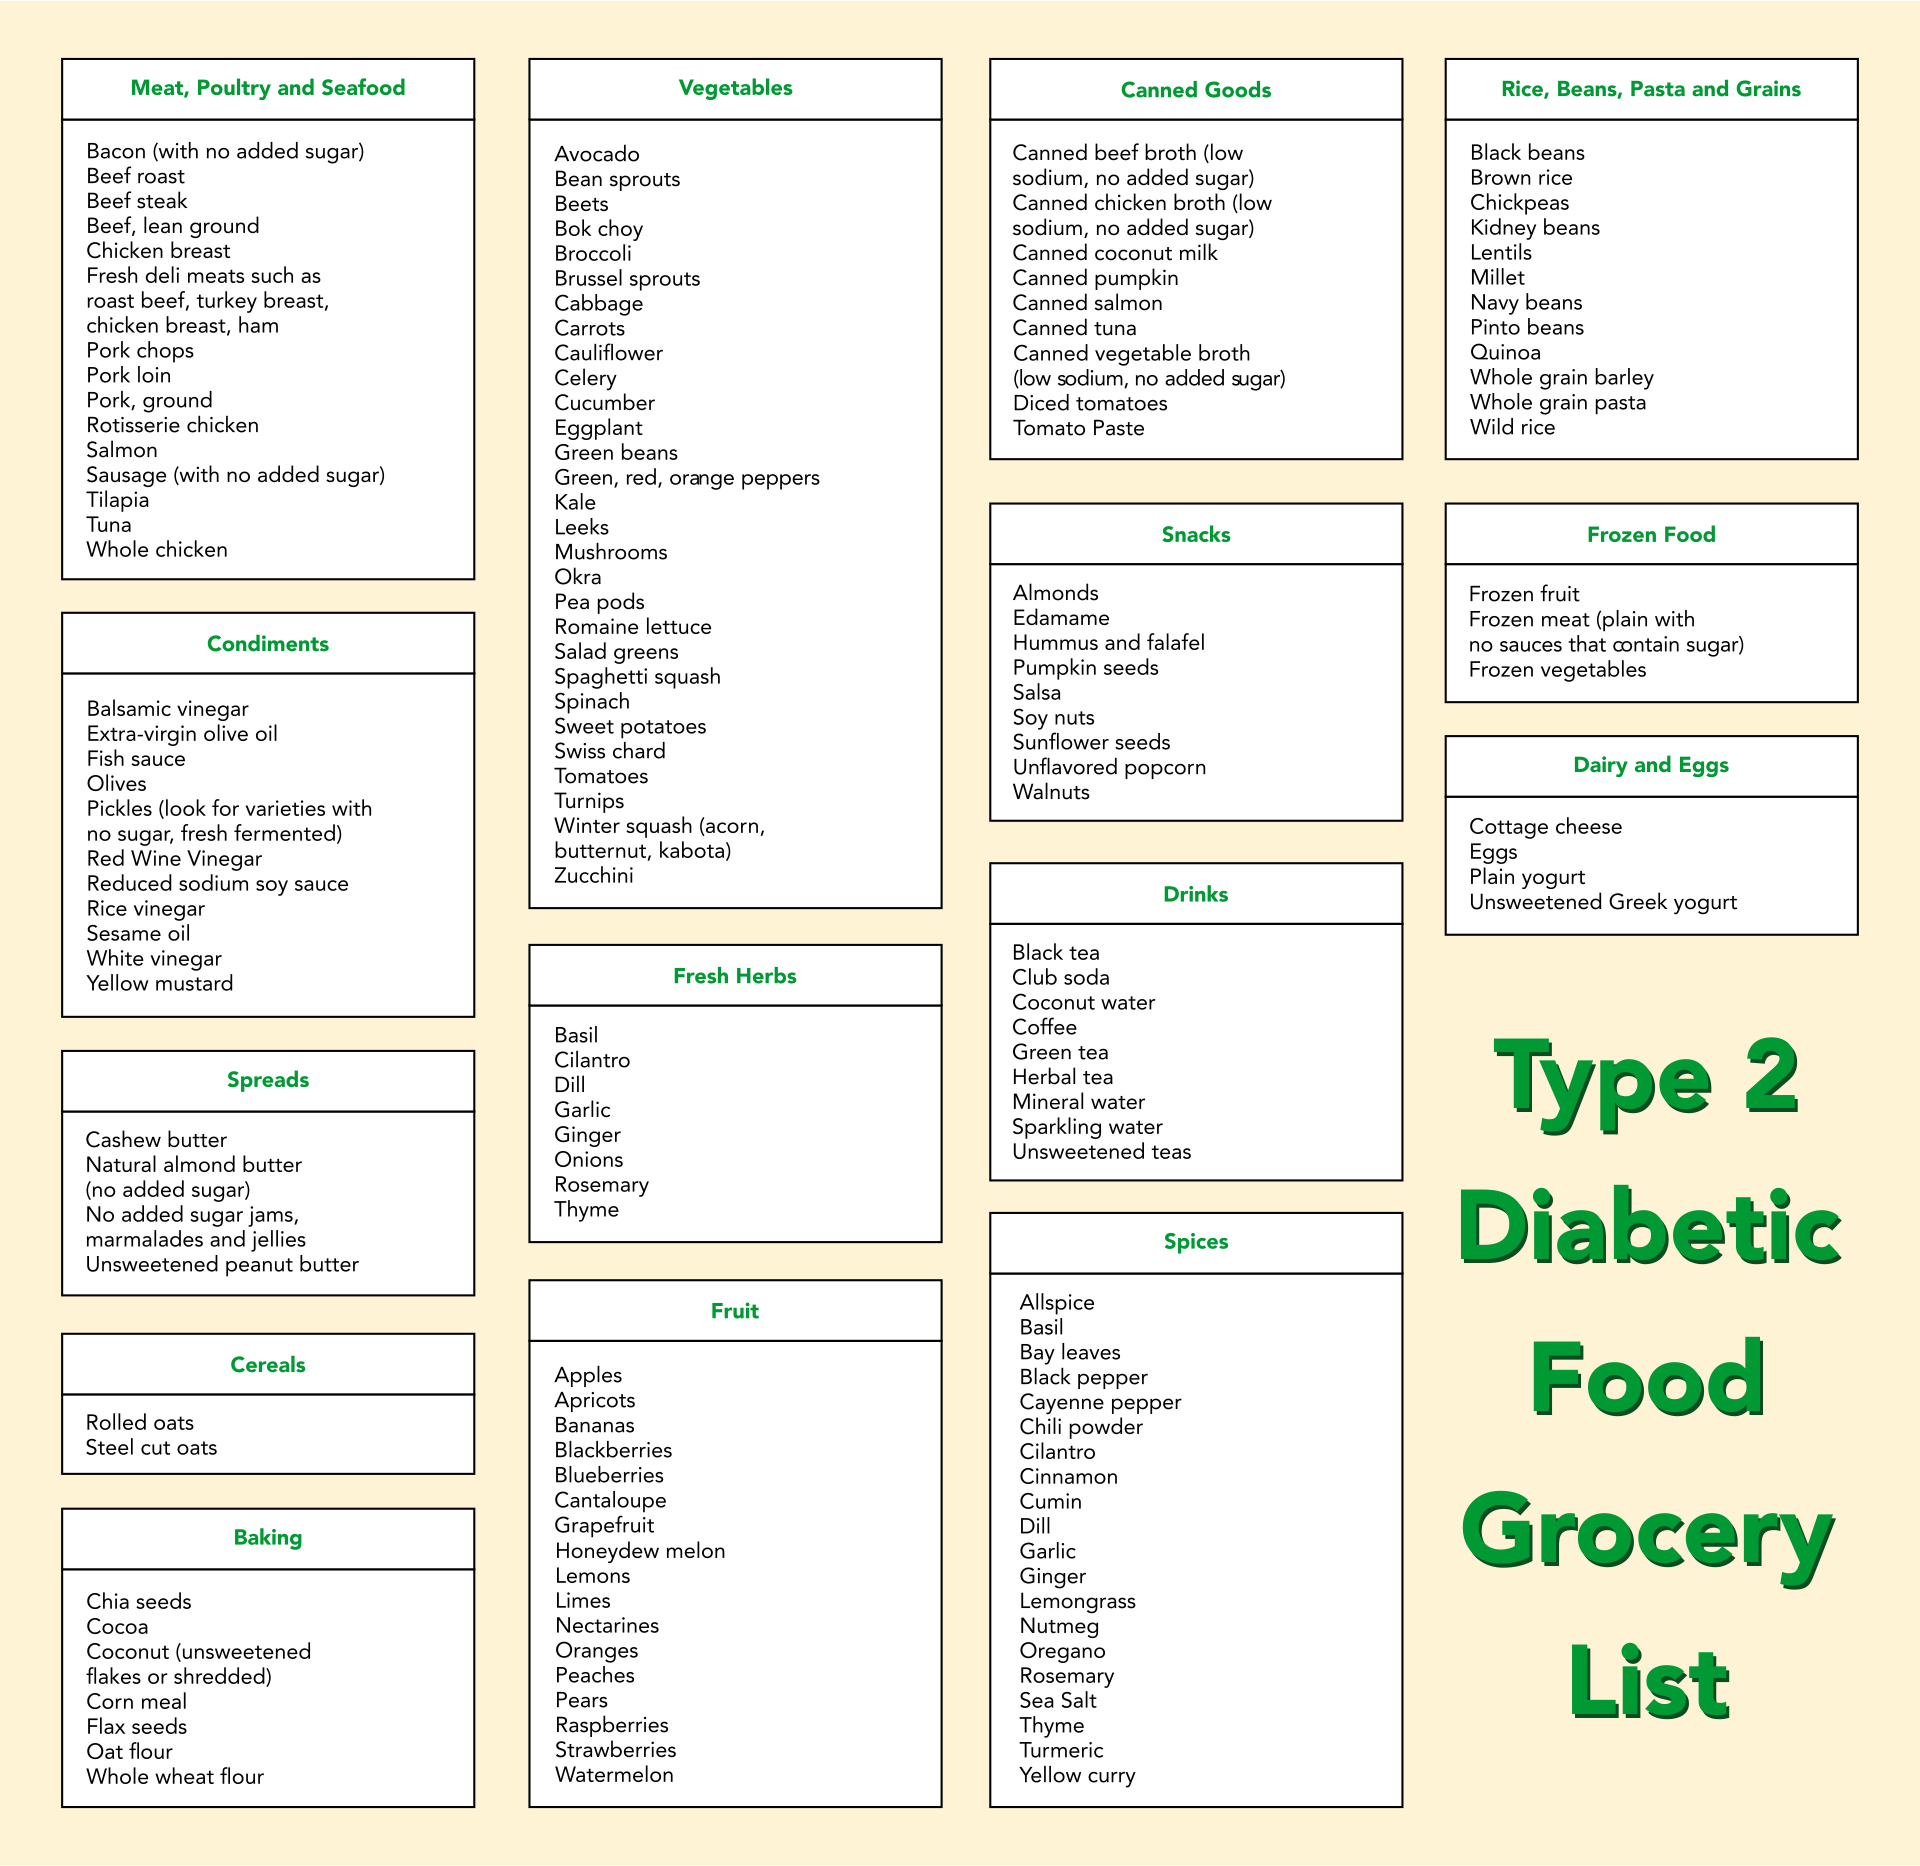 Type 2 Diabetic Food Grocery List 381735 